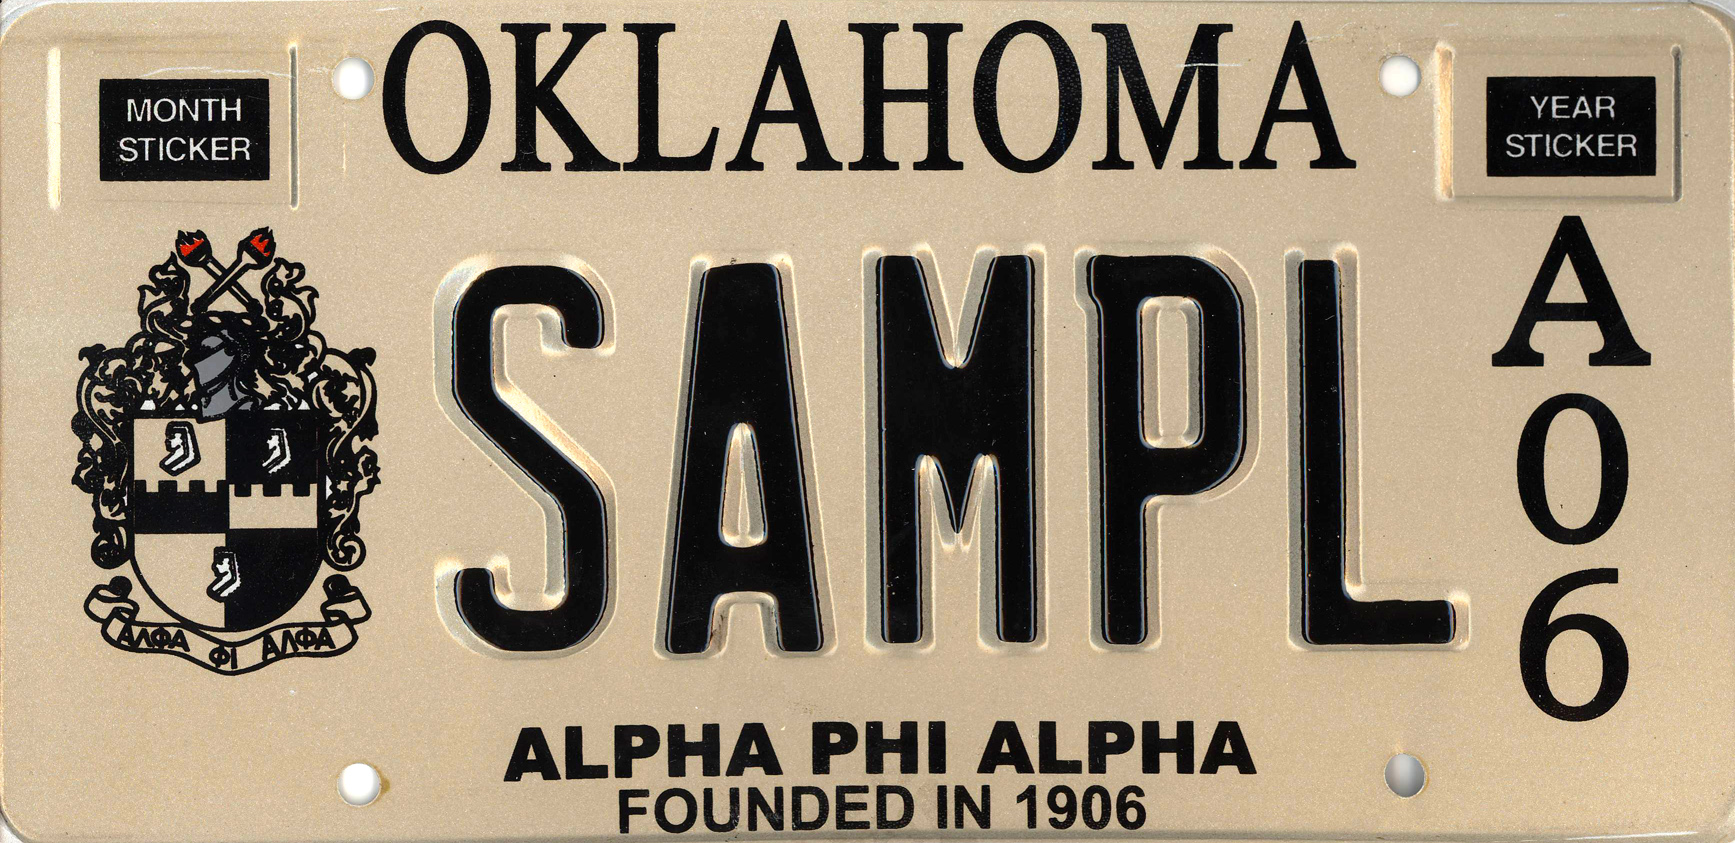 oklahoma license plate